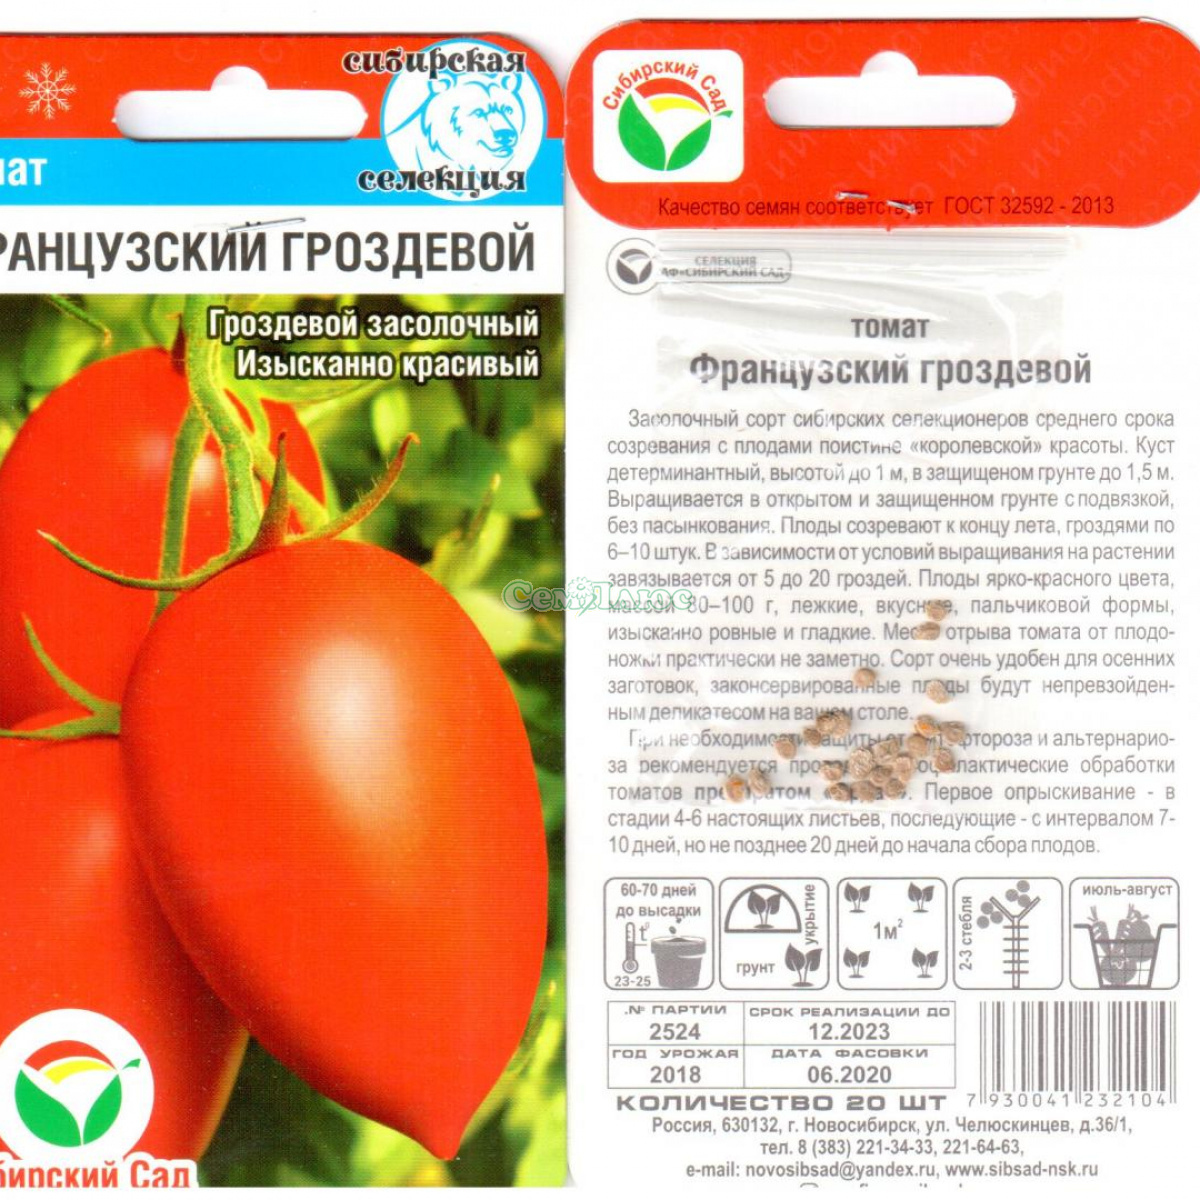 Описание крупноплодного томата царский подарок и правила выращивания сорта в тепличных условиях